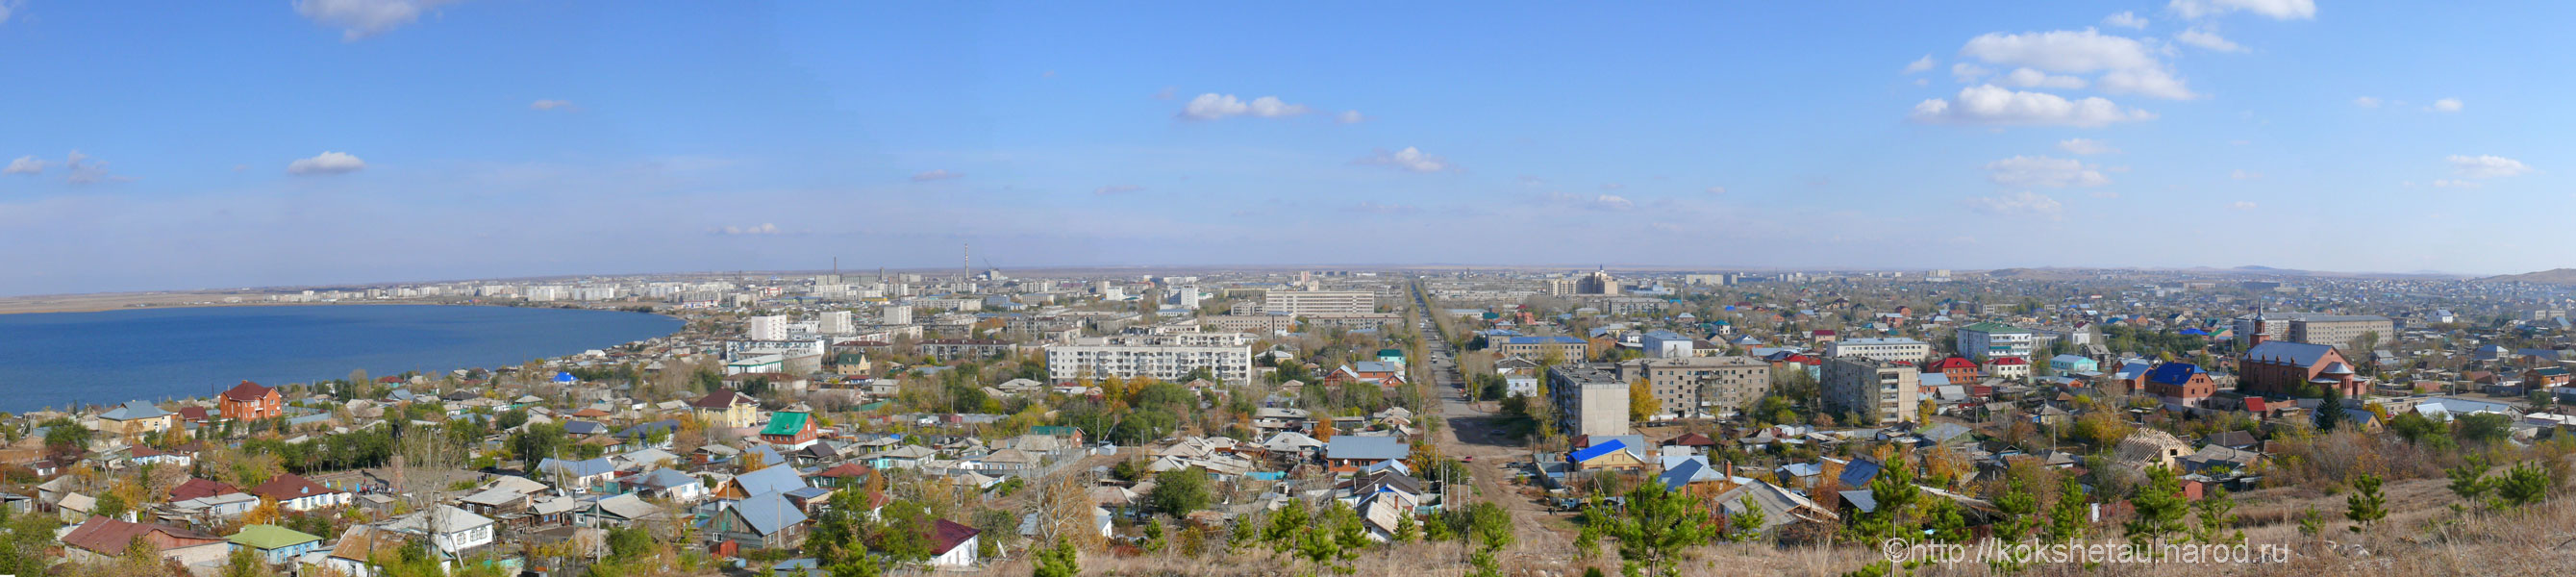 Город Кокшетау Казахстан